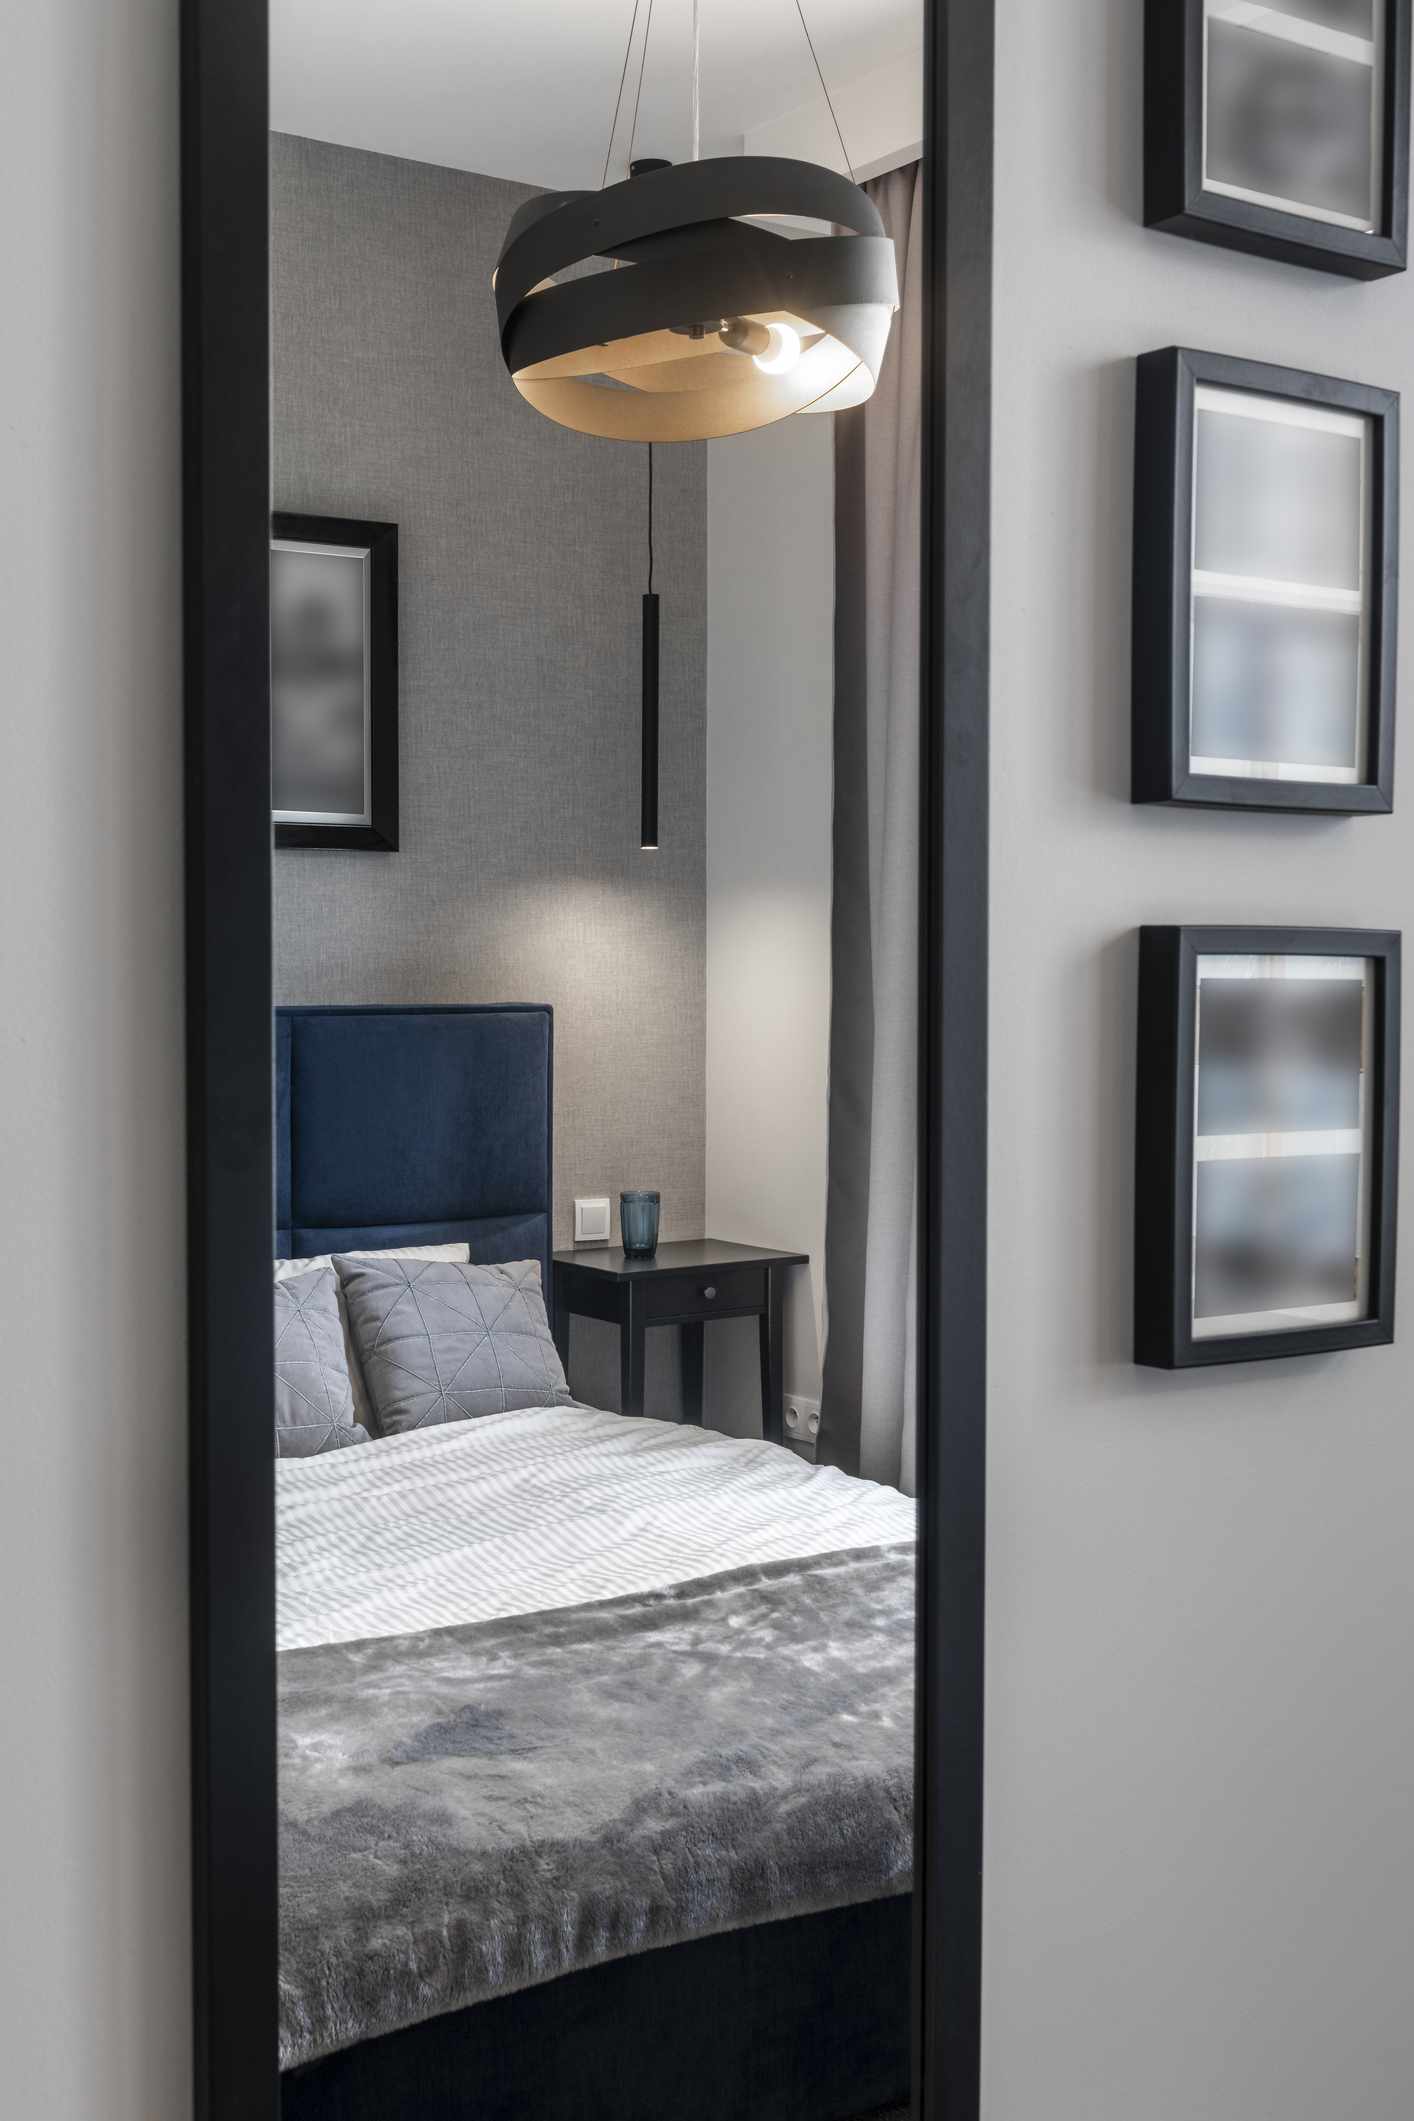 Chambre à coucher moderne en finition grise avec lit bleu et miroir face au lit